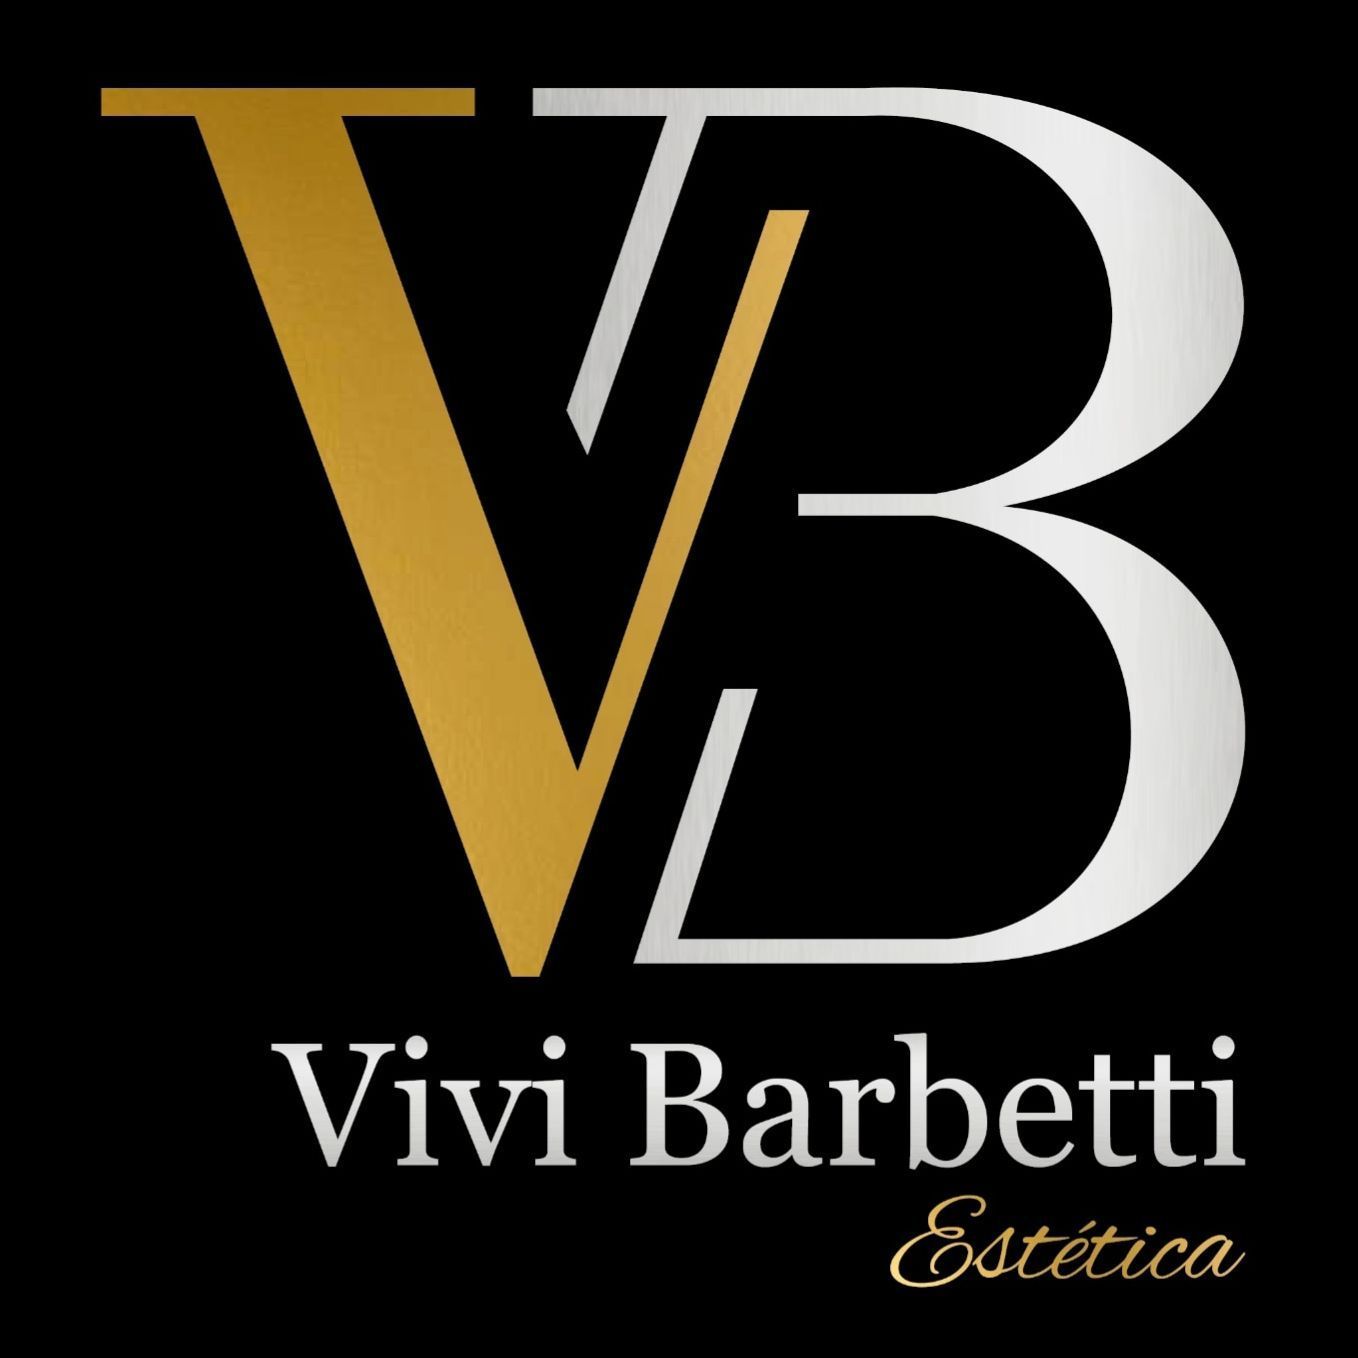 Vivi Barbetti Estetica, Carrer de la Democràcia, 31, 46018, Valencia